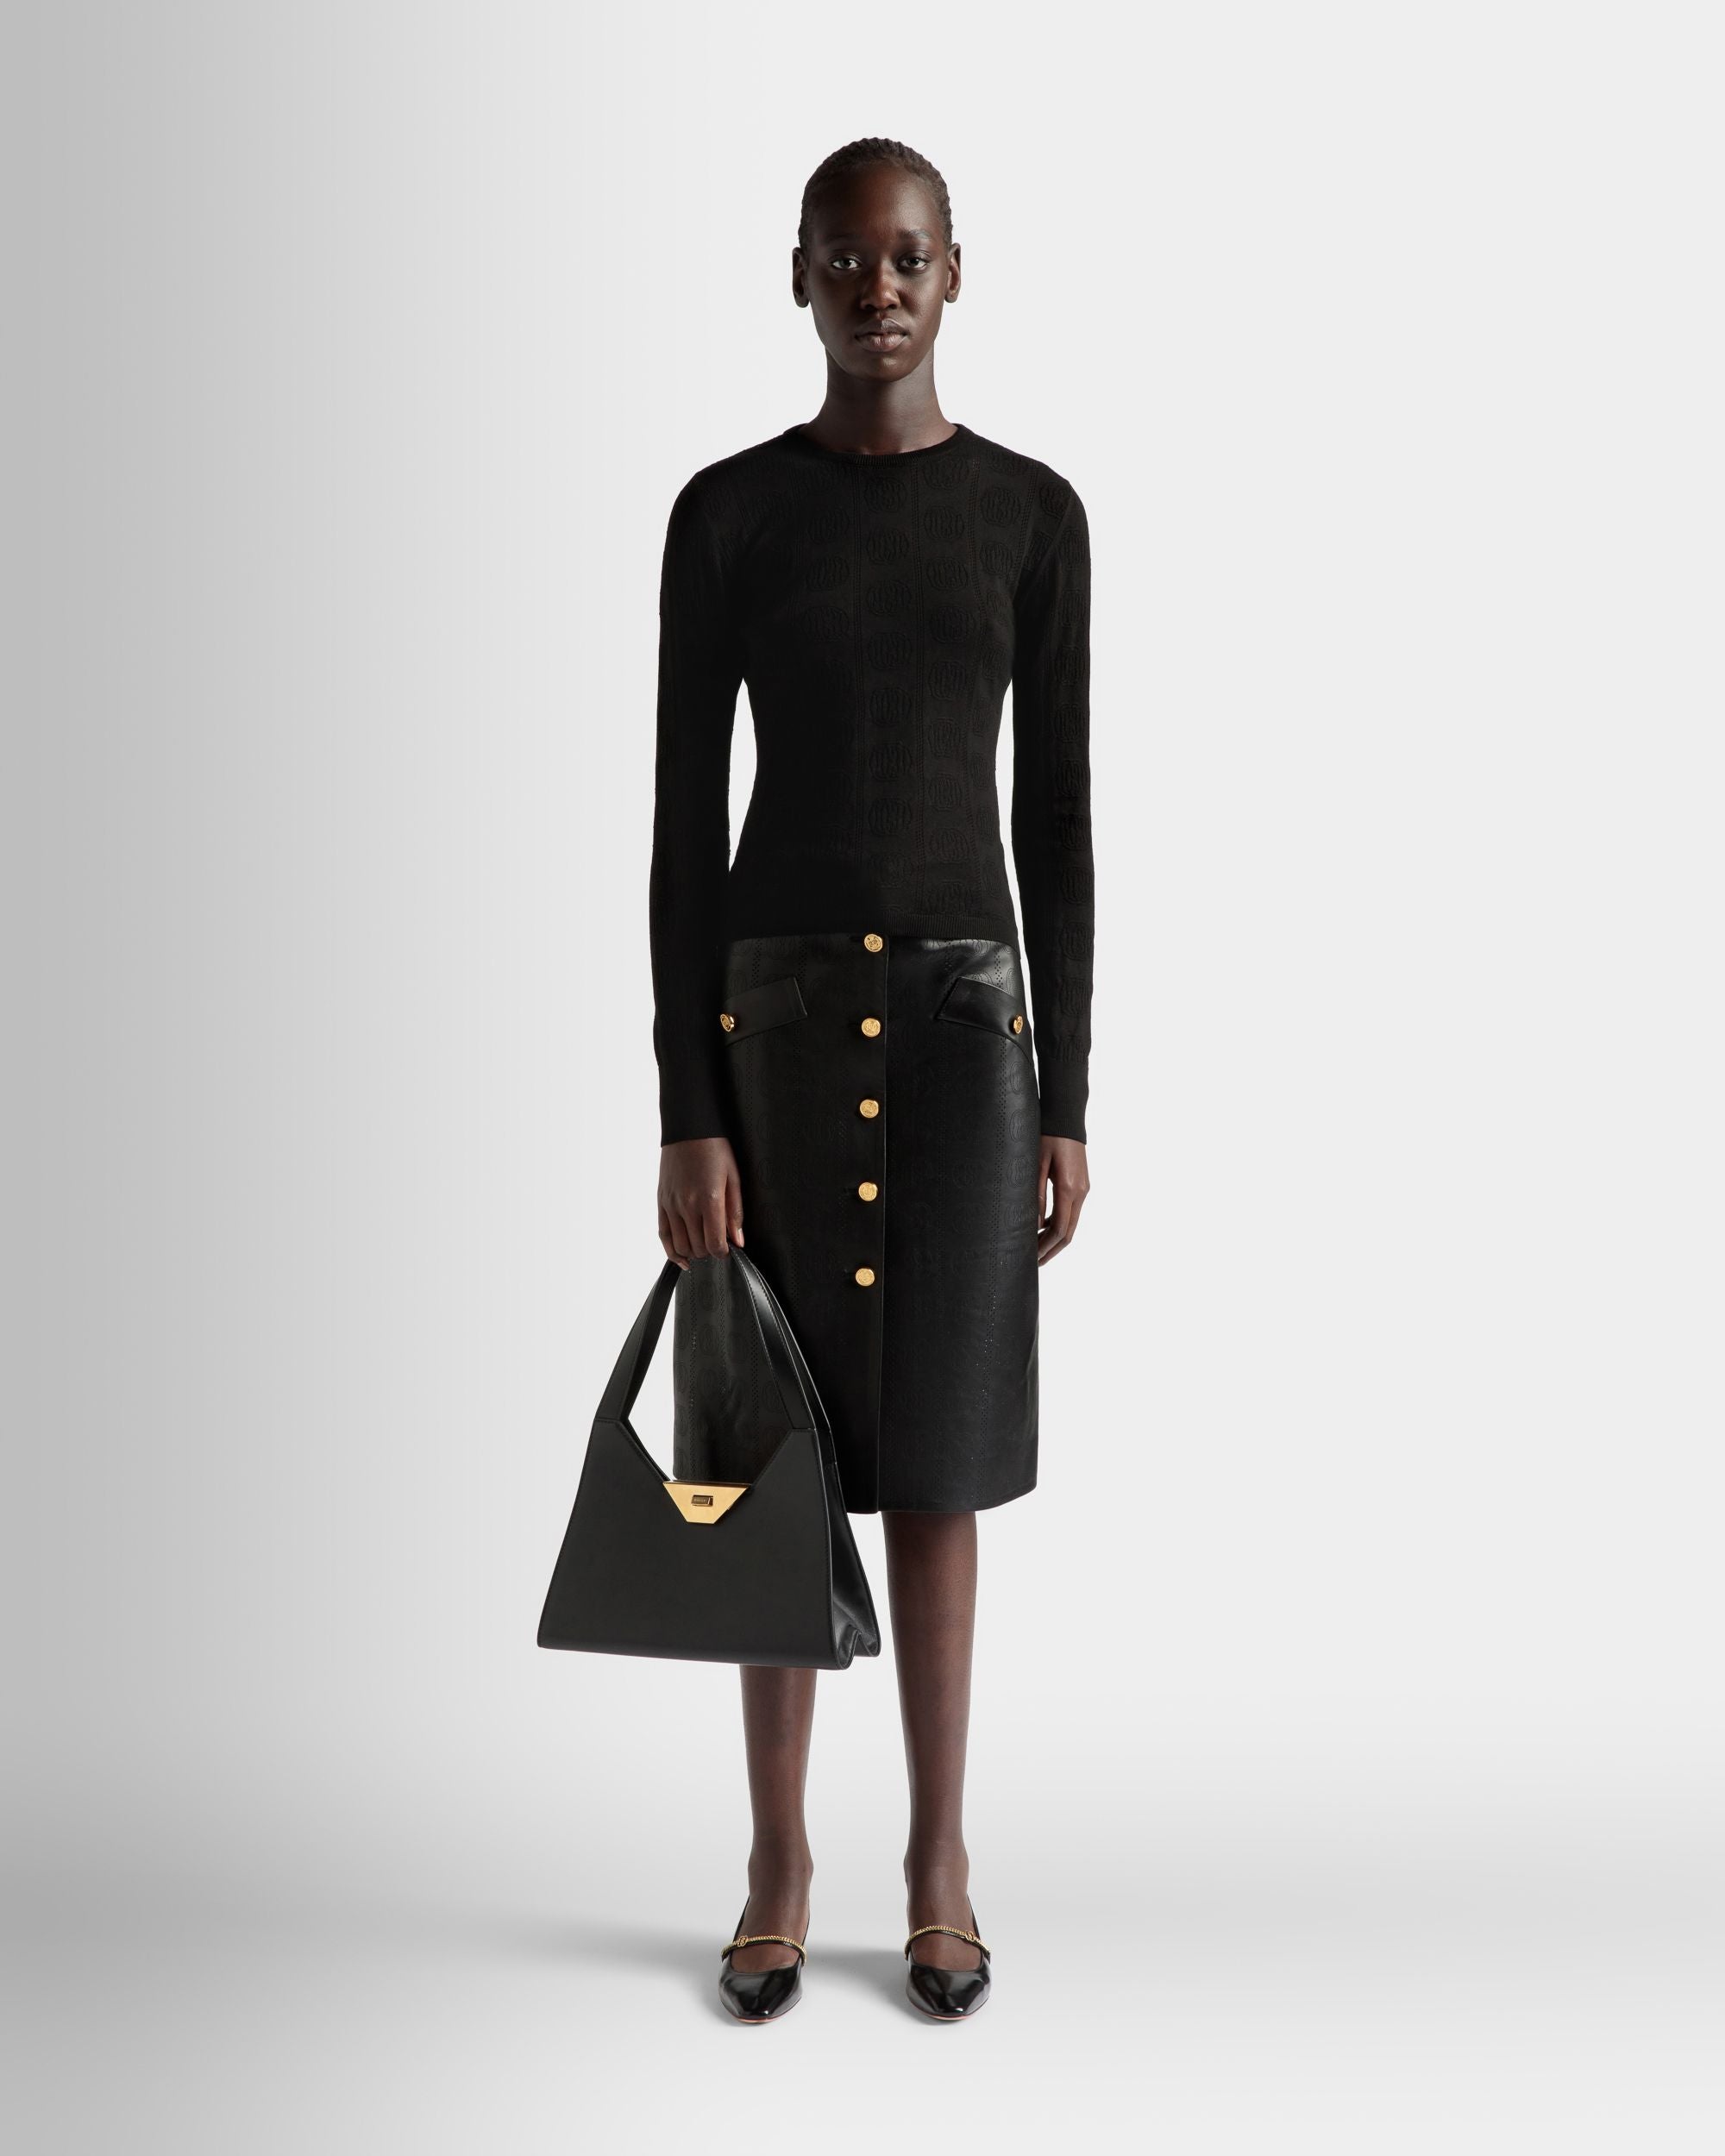 Tilt | Women's Shoulder Bag in Black Leather | Bally | On Model Front